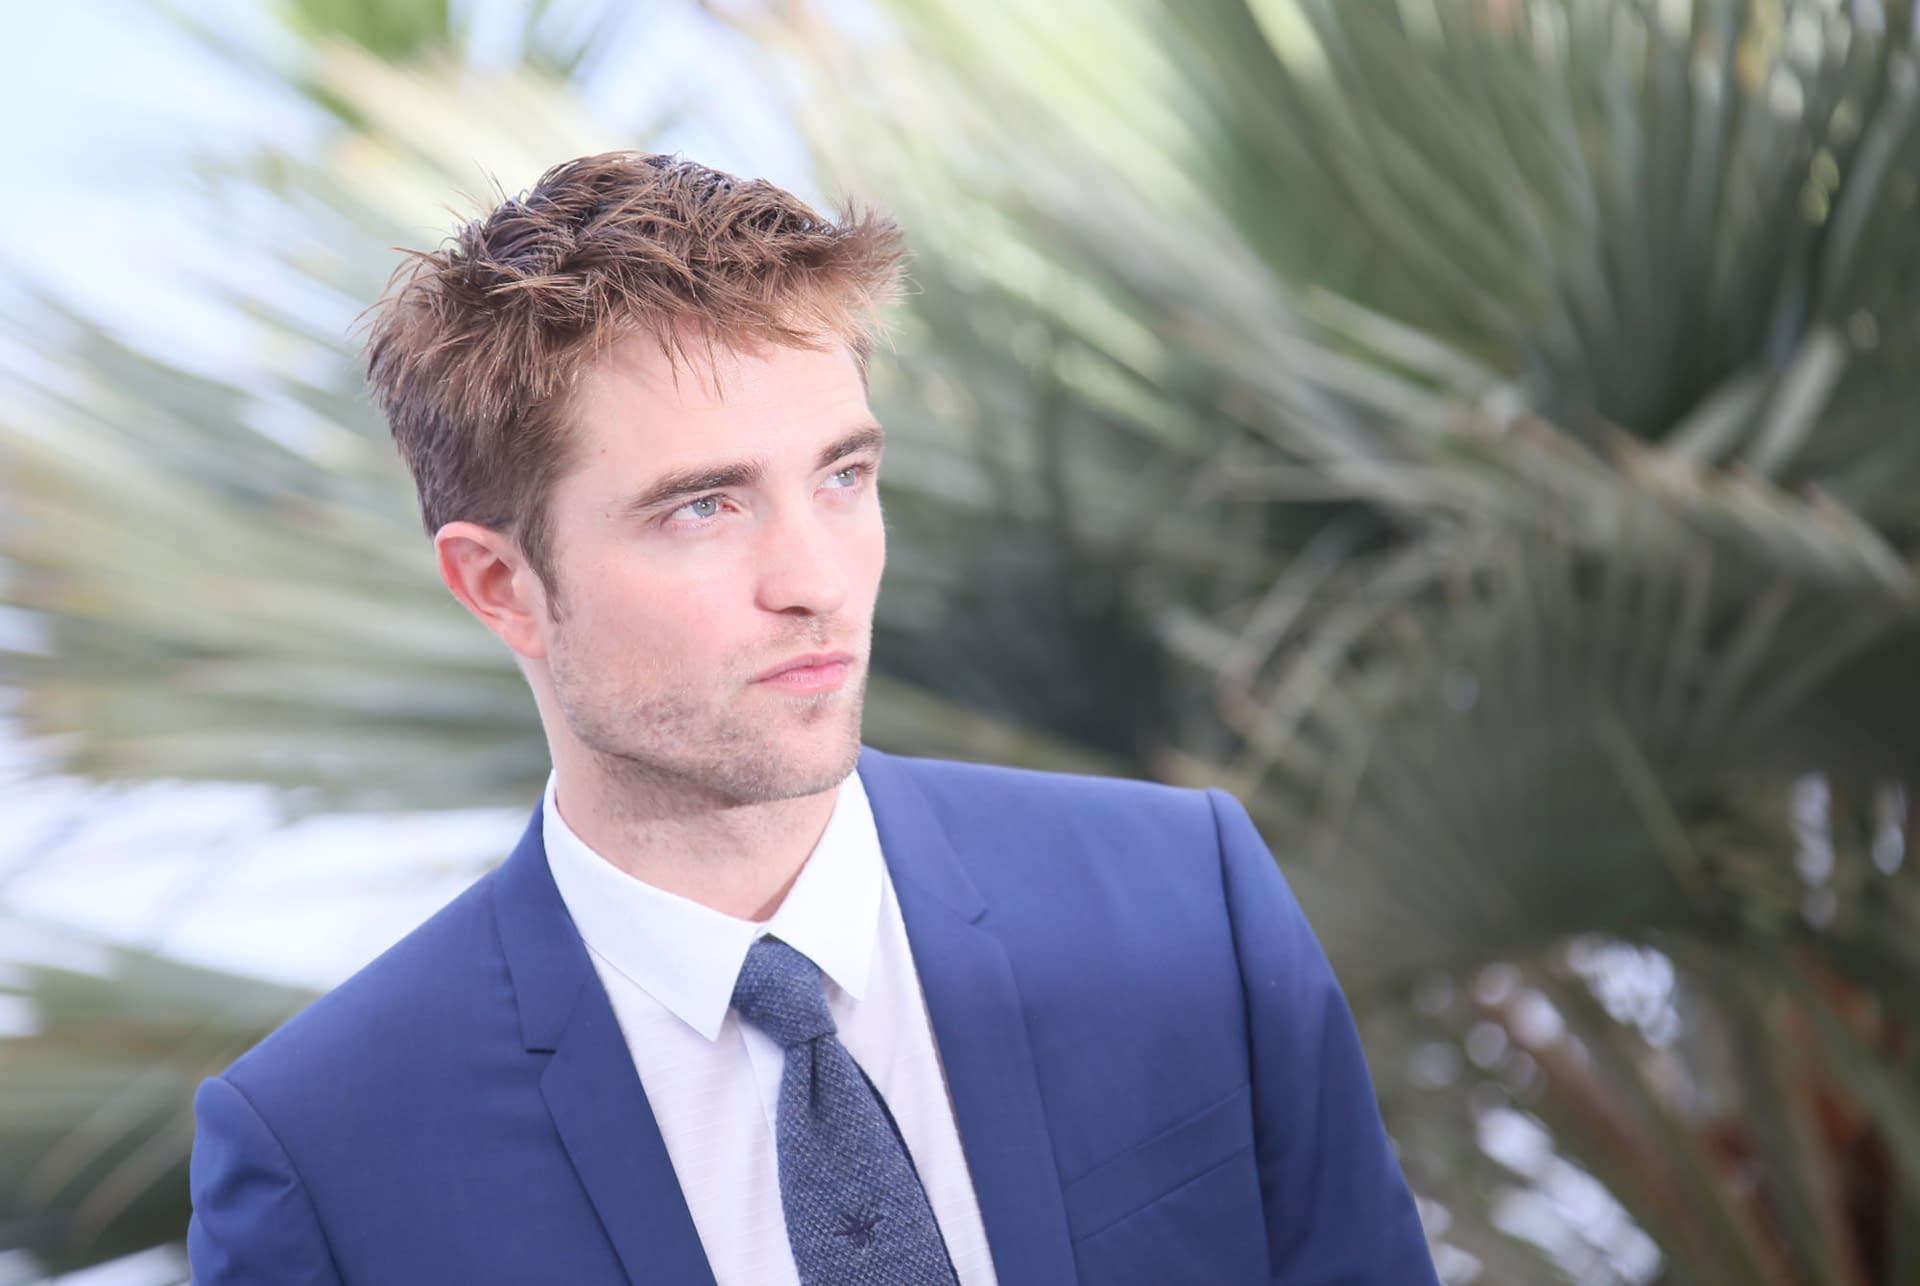 Robert Pattinson Has Been Cast to Play Batman in Matt Reeves' The Batman